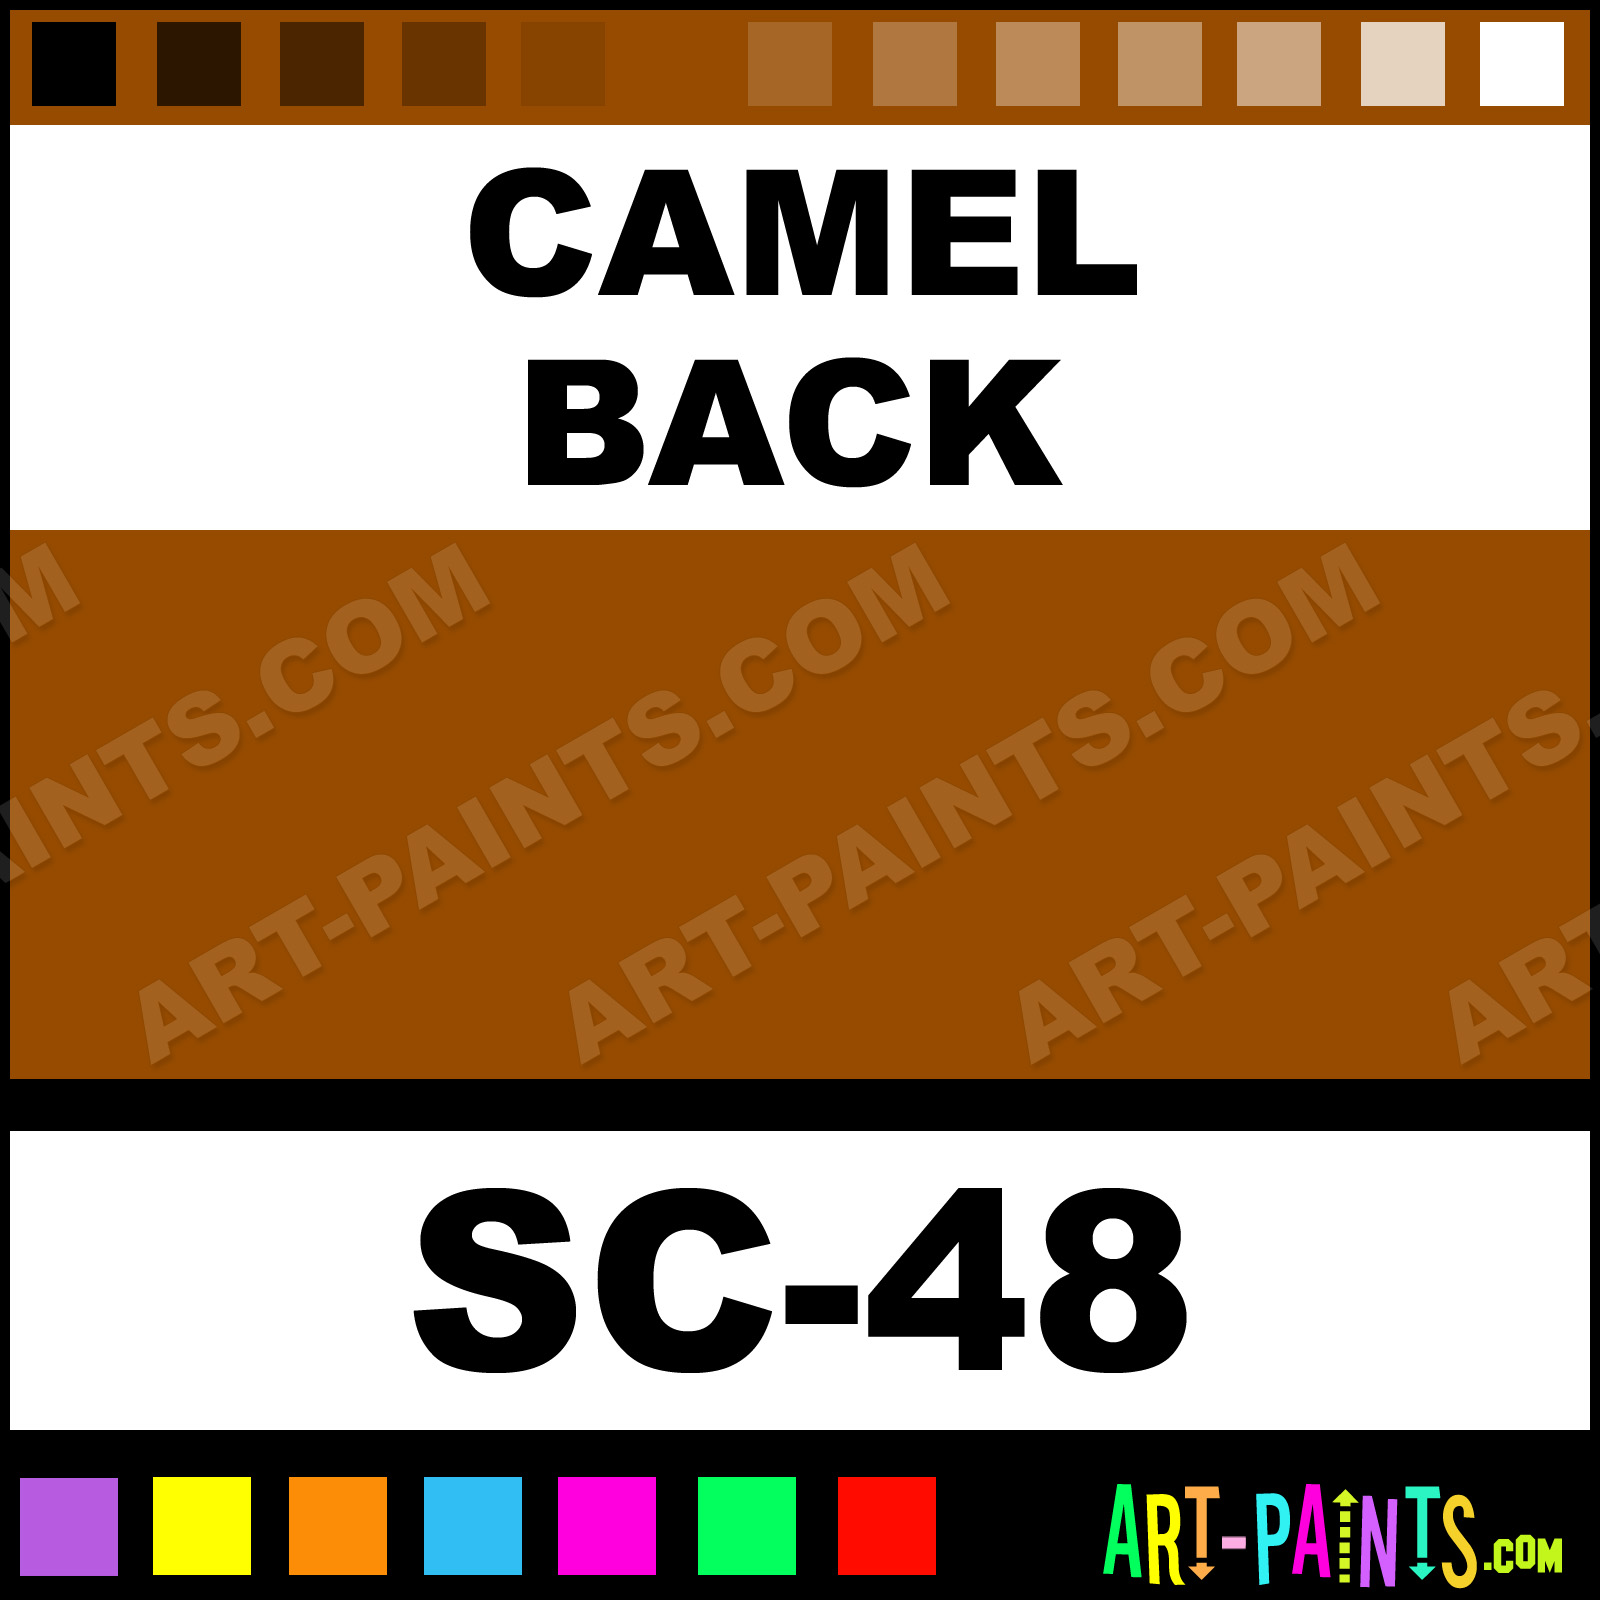 MAYCO GLAZE Camel Back  Sheffield Pottery Paints